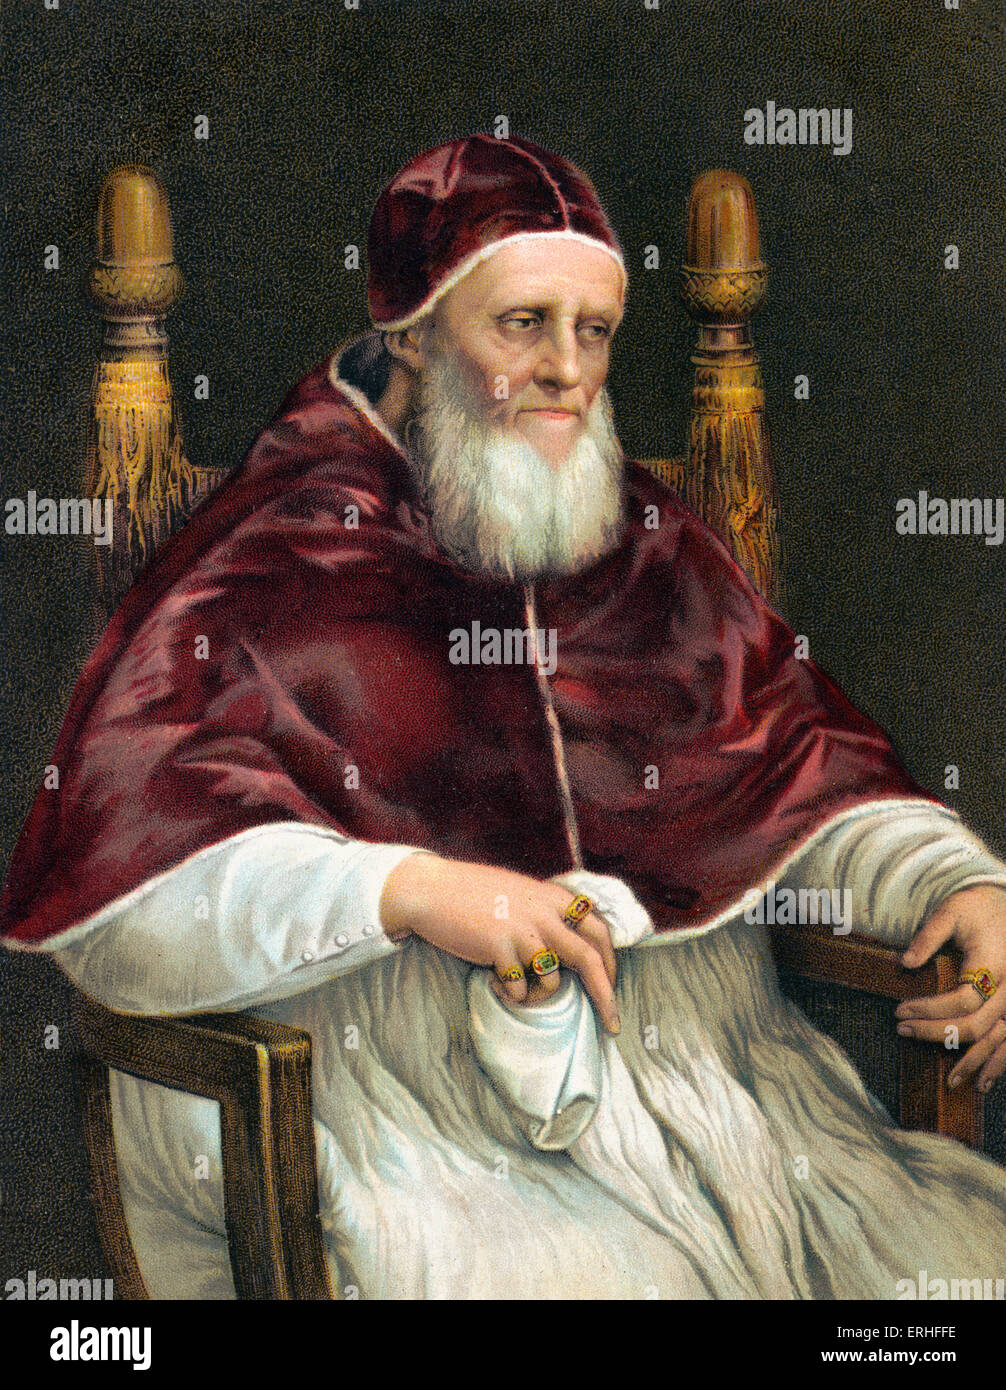 Le Pape Jules II - portrait. Pape de 1503 à 1513 - 5 décembre 1443 - 21 février 1513 - peinture de Raffaello Sanzio Banque D'Images